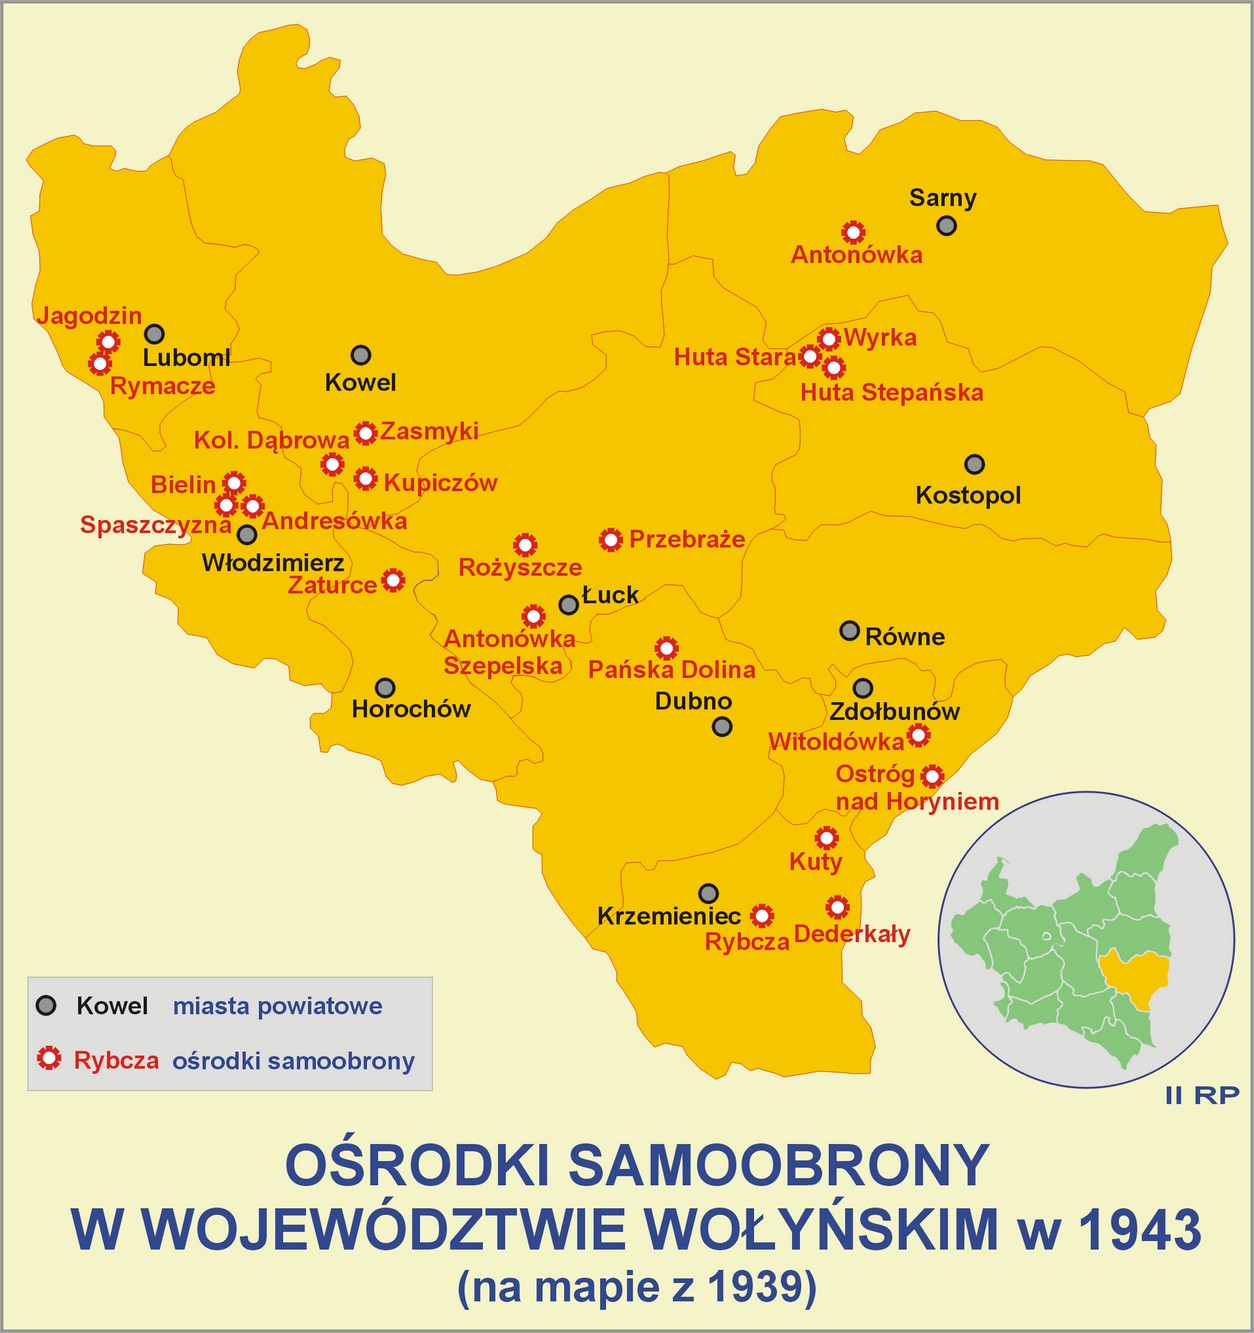 Ośrodki samoobrony w województwie wołyńskim 1943 roku. Stara Huta znajdowała się w powiecie kostopolskim.